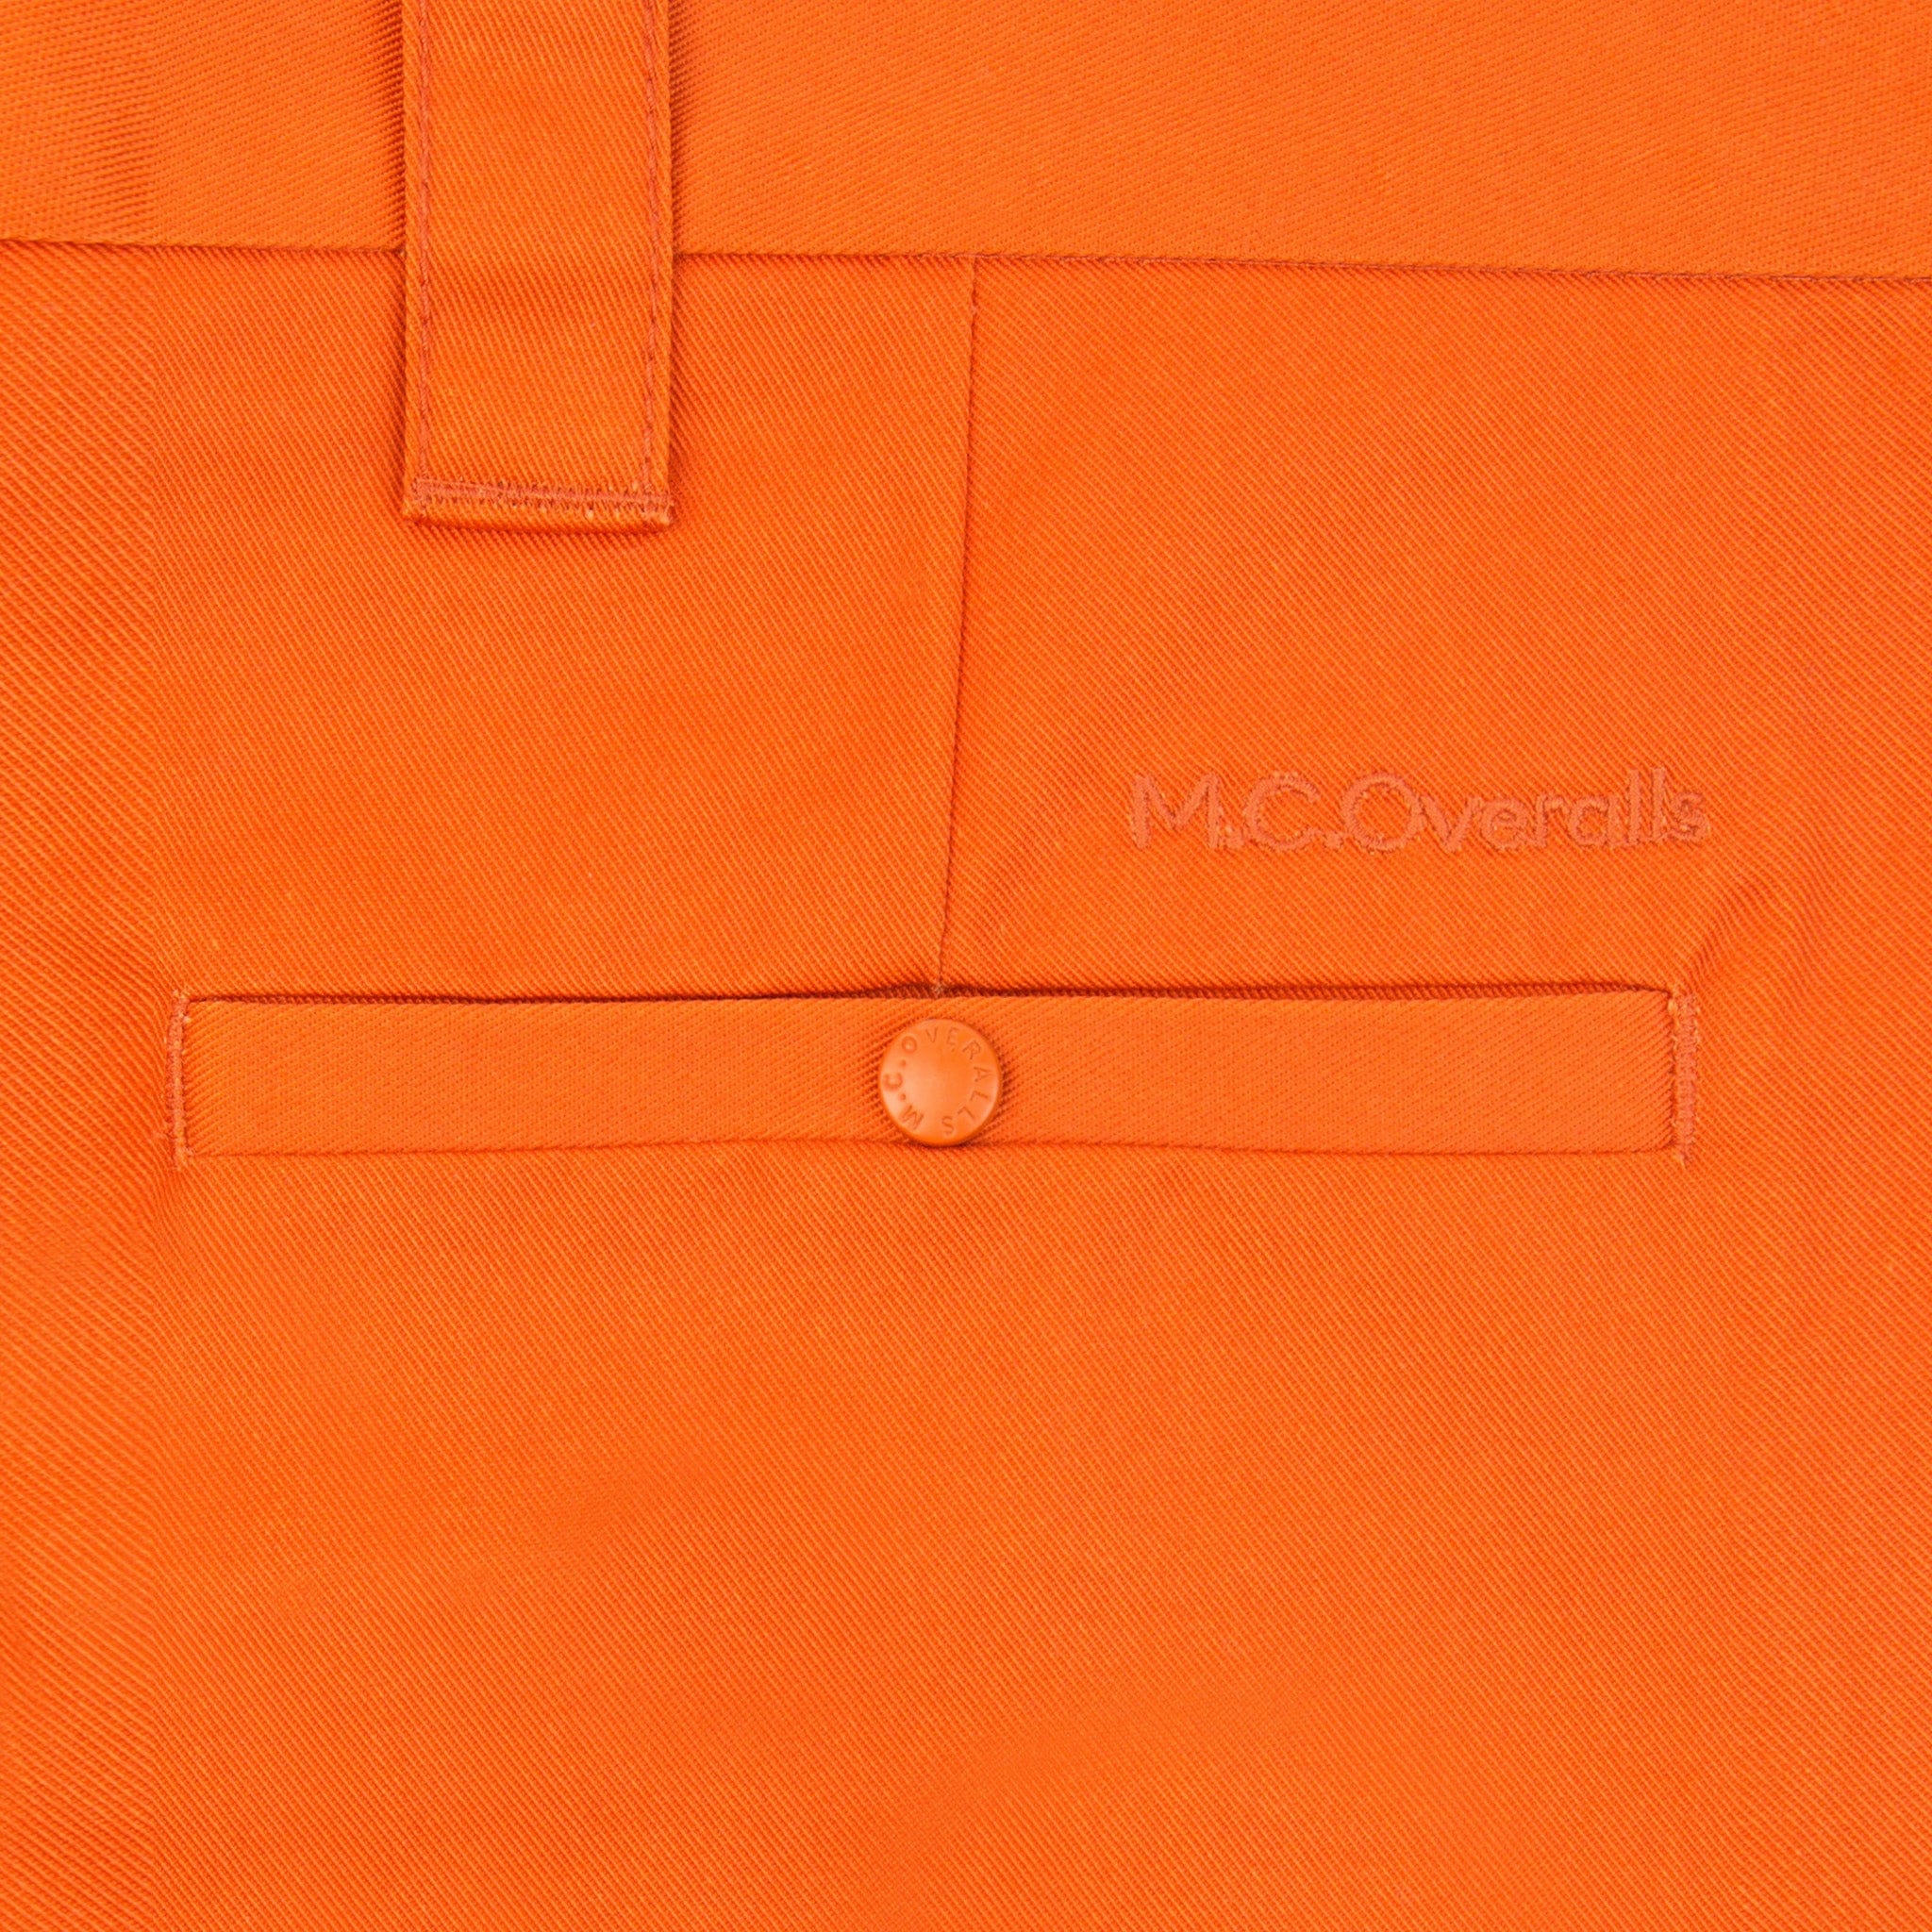 Slim-Fit Work Trousers Orange